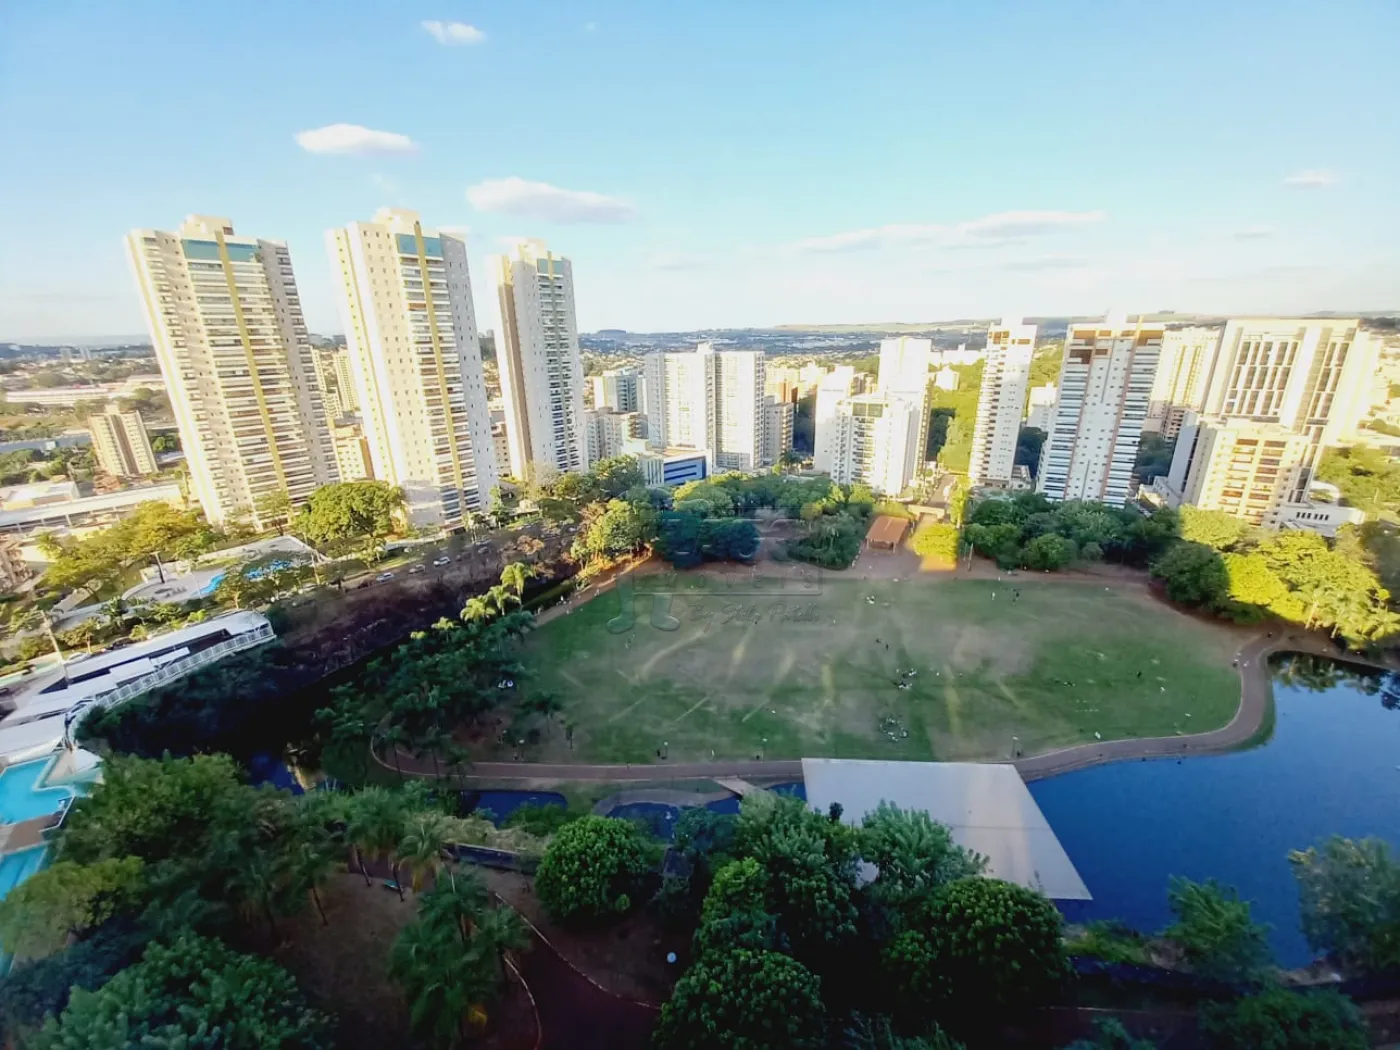 Comprar Apartamento / Padrão em Ribeirão Preto R$ 520.000,00 - Foto 11